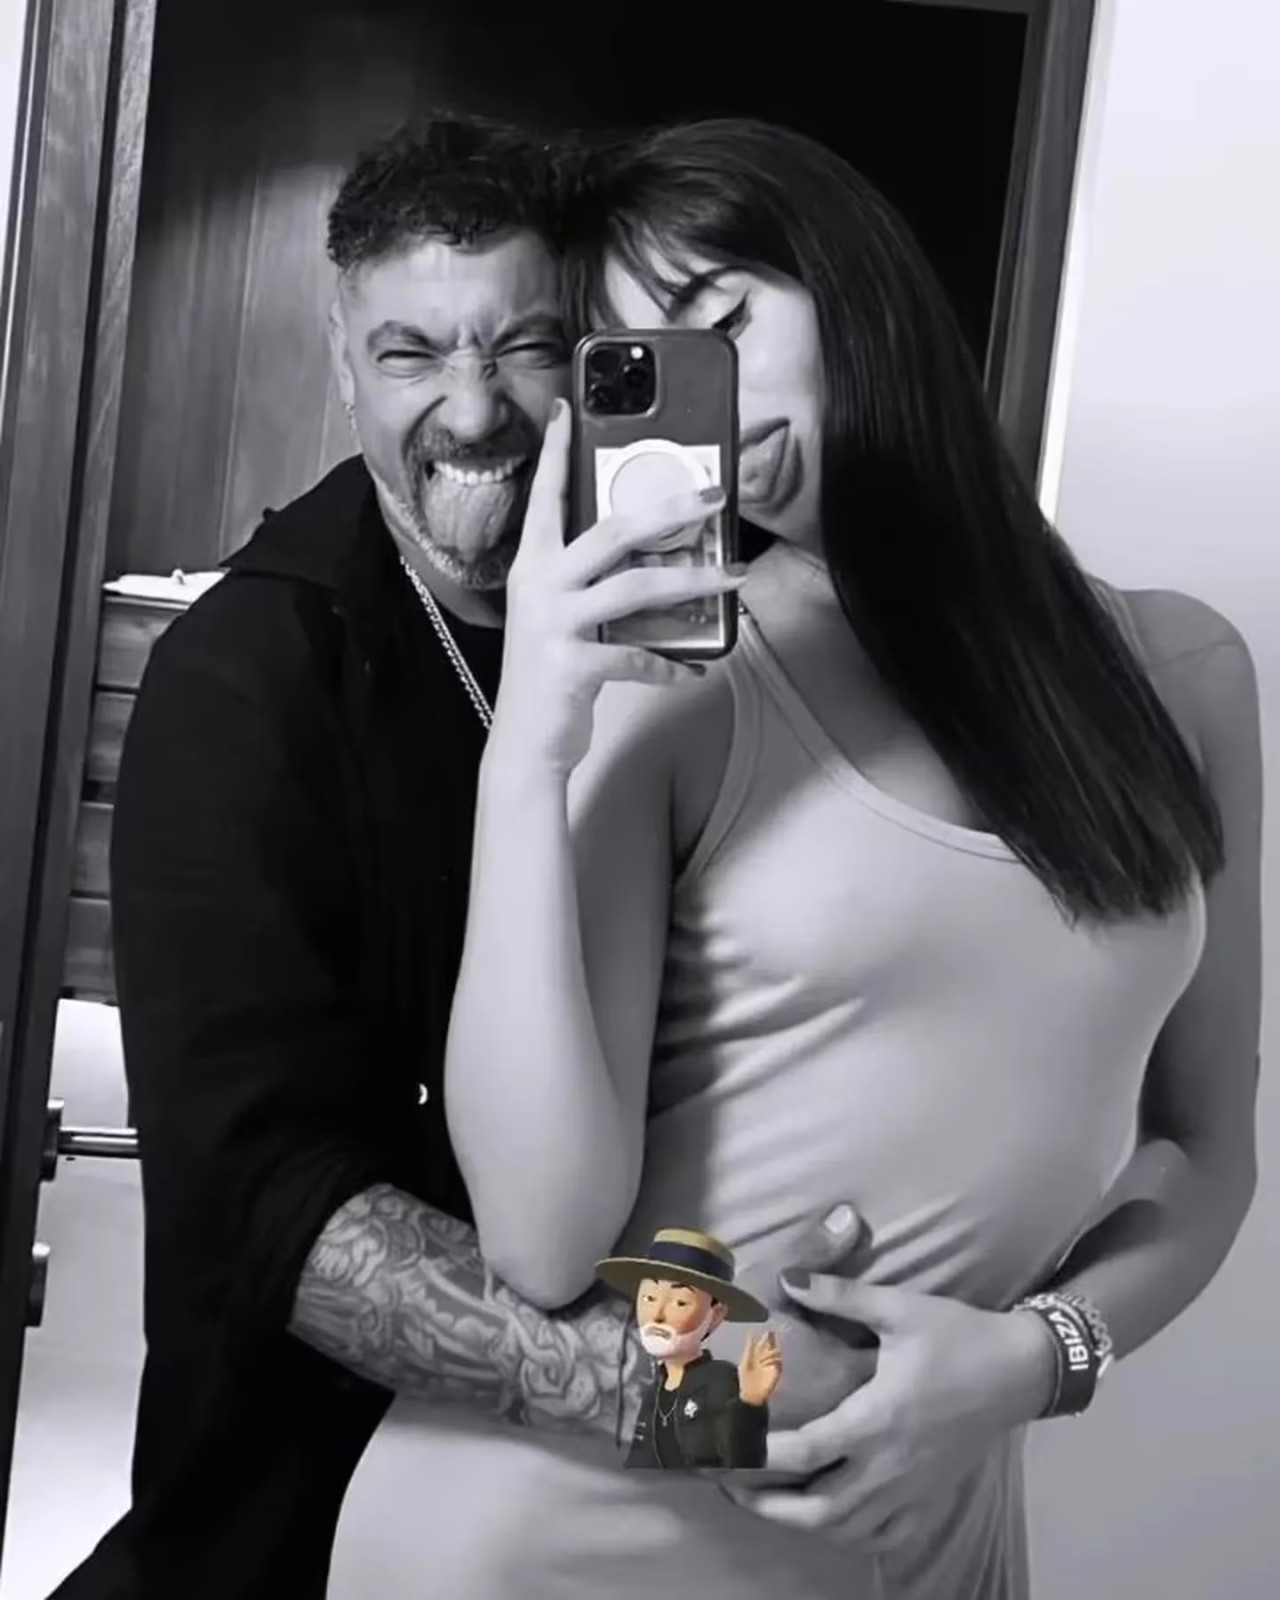 La particular imagen que publicó el Pocho Lavezzi junto a su pareja. Foto: Instagram/pocholavezzi22argenti.